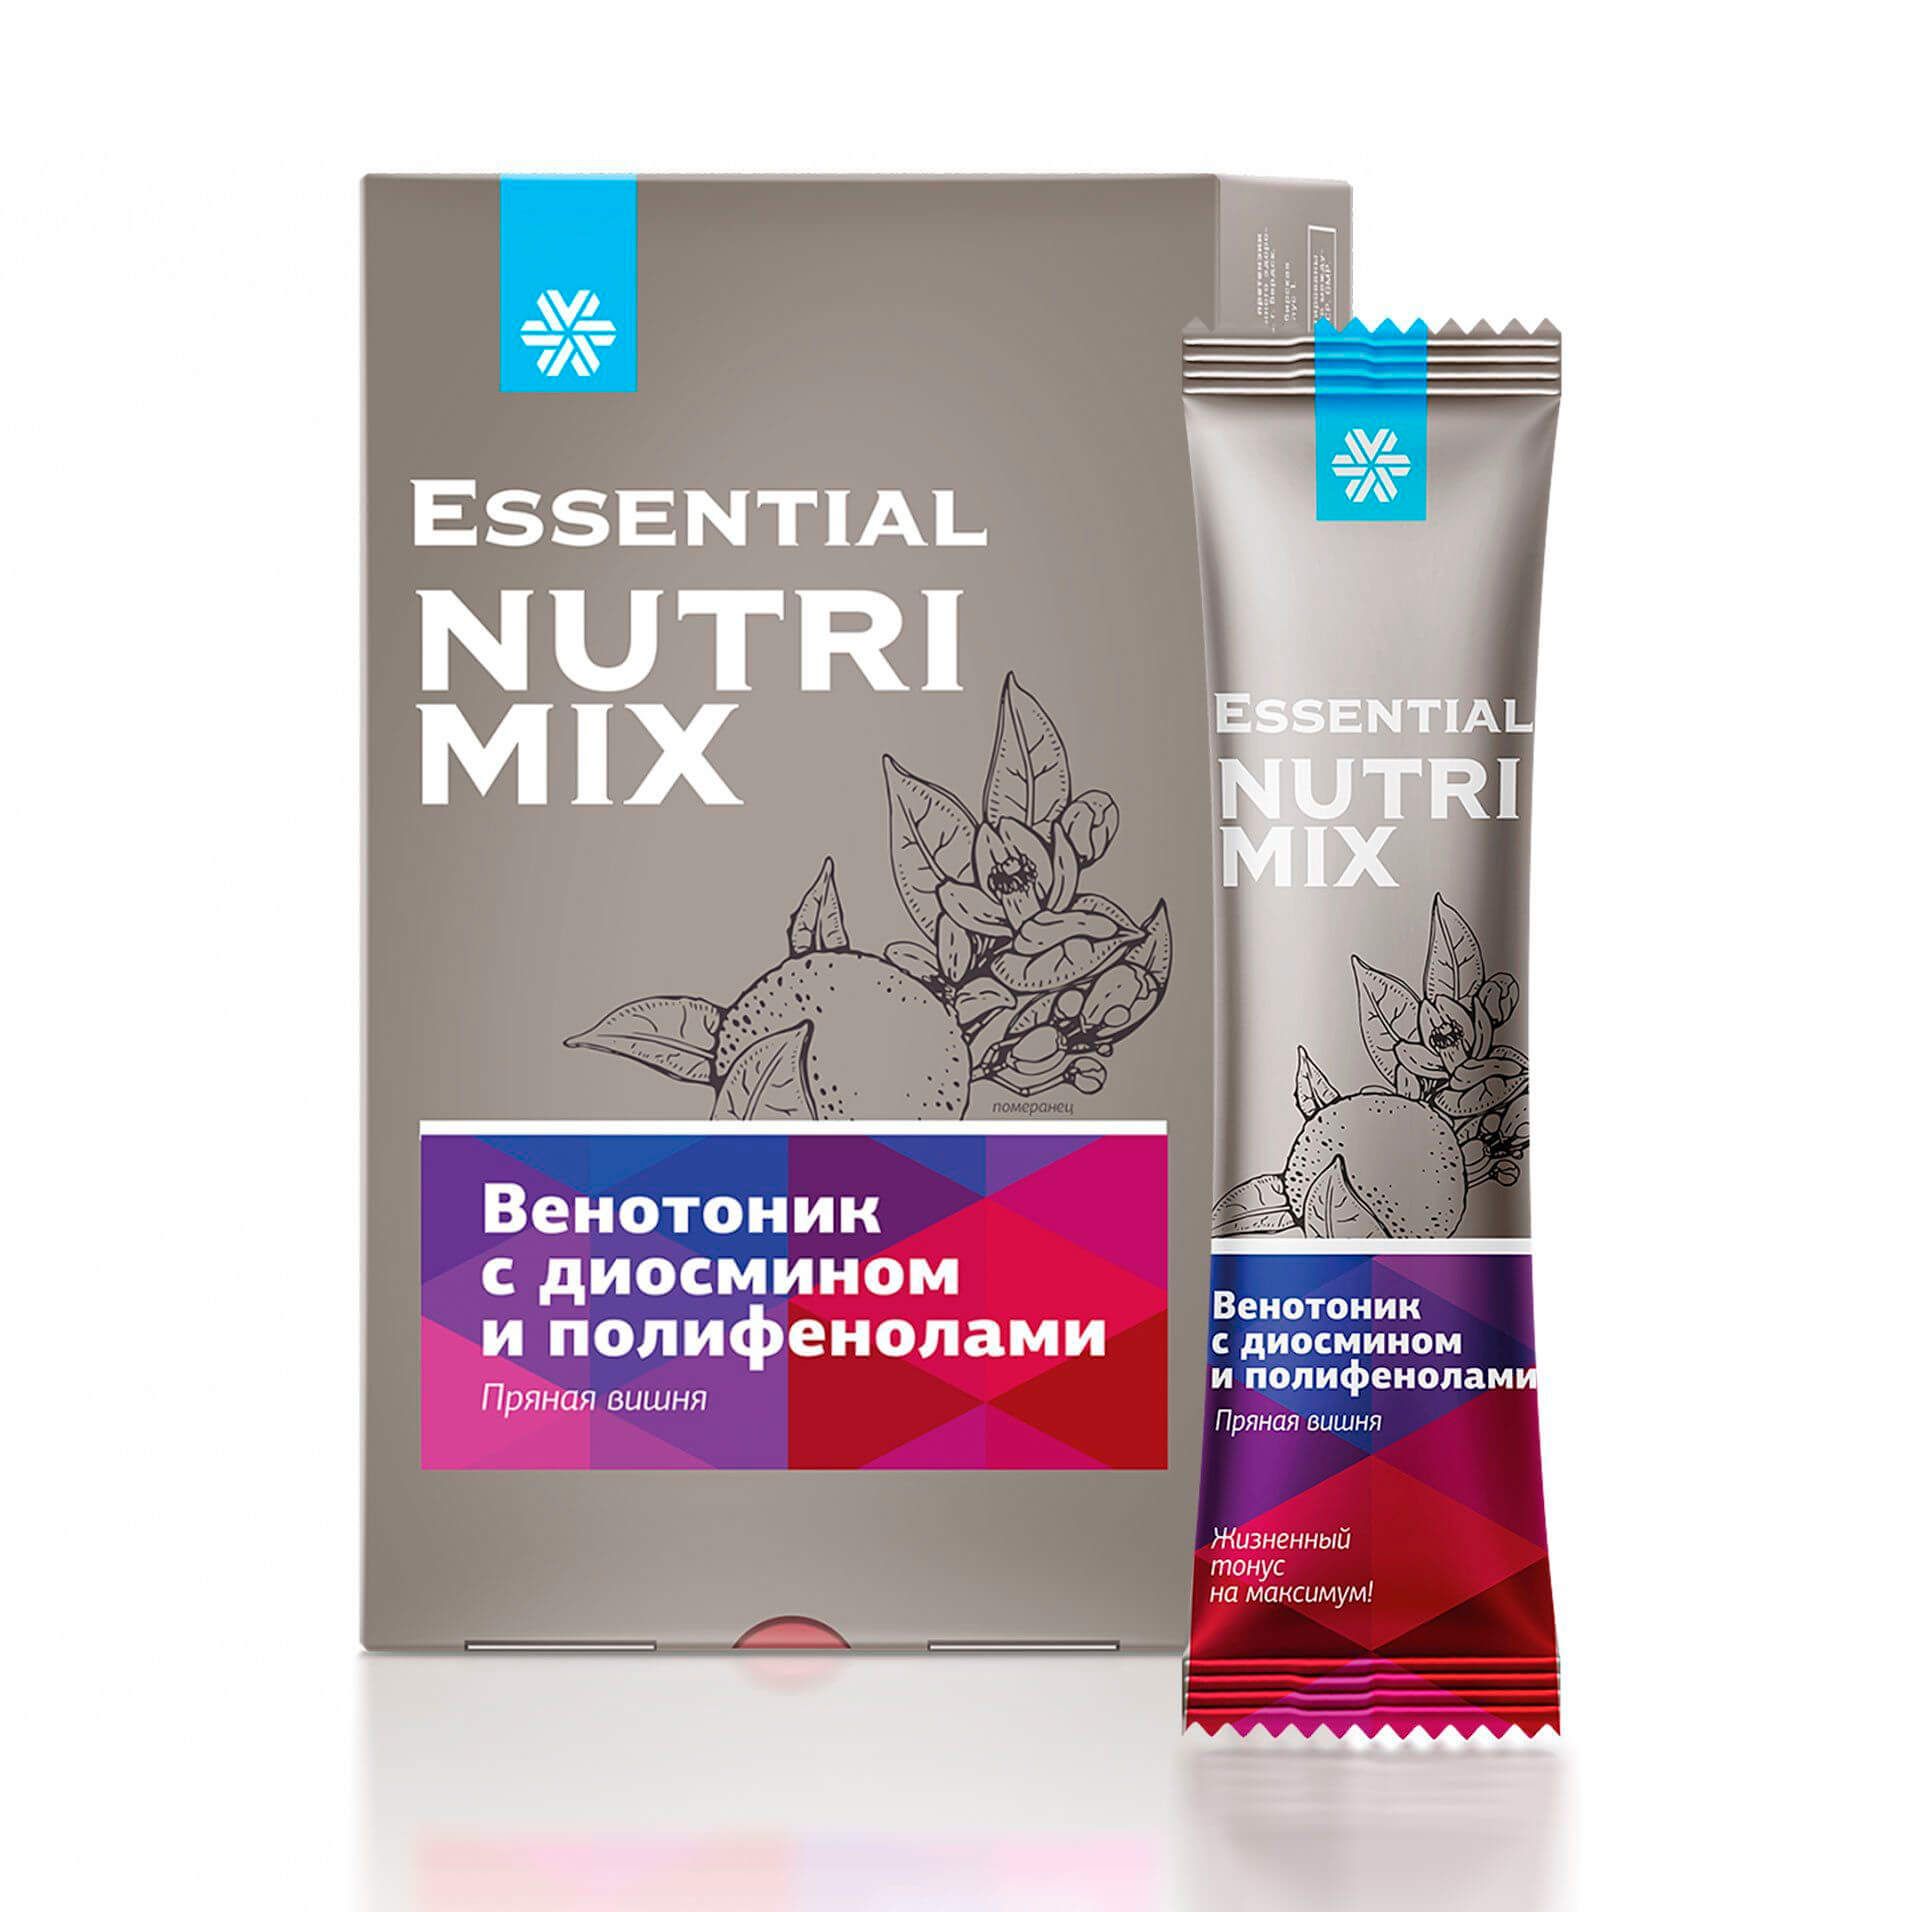 Essential Nutrimix - Венотоник с диосмином и полифенолами (пряная вишня)